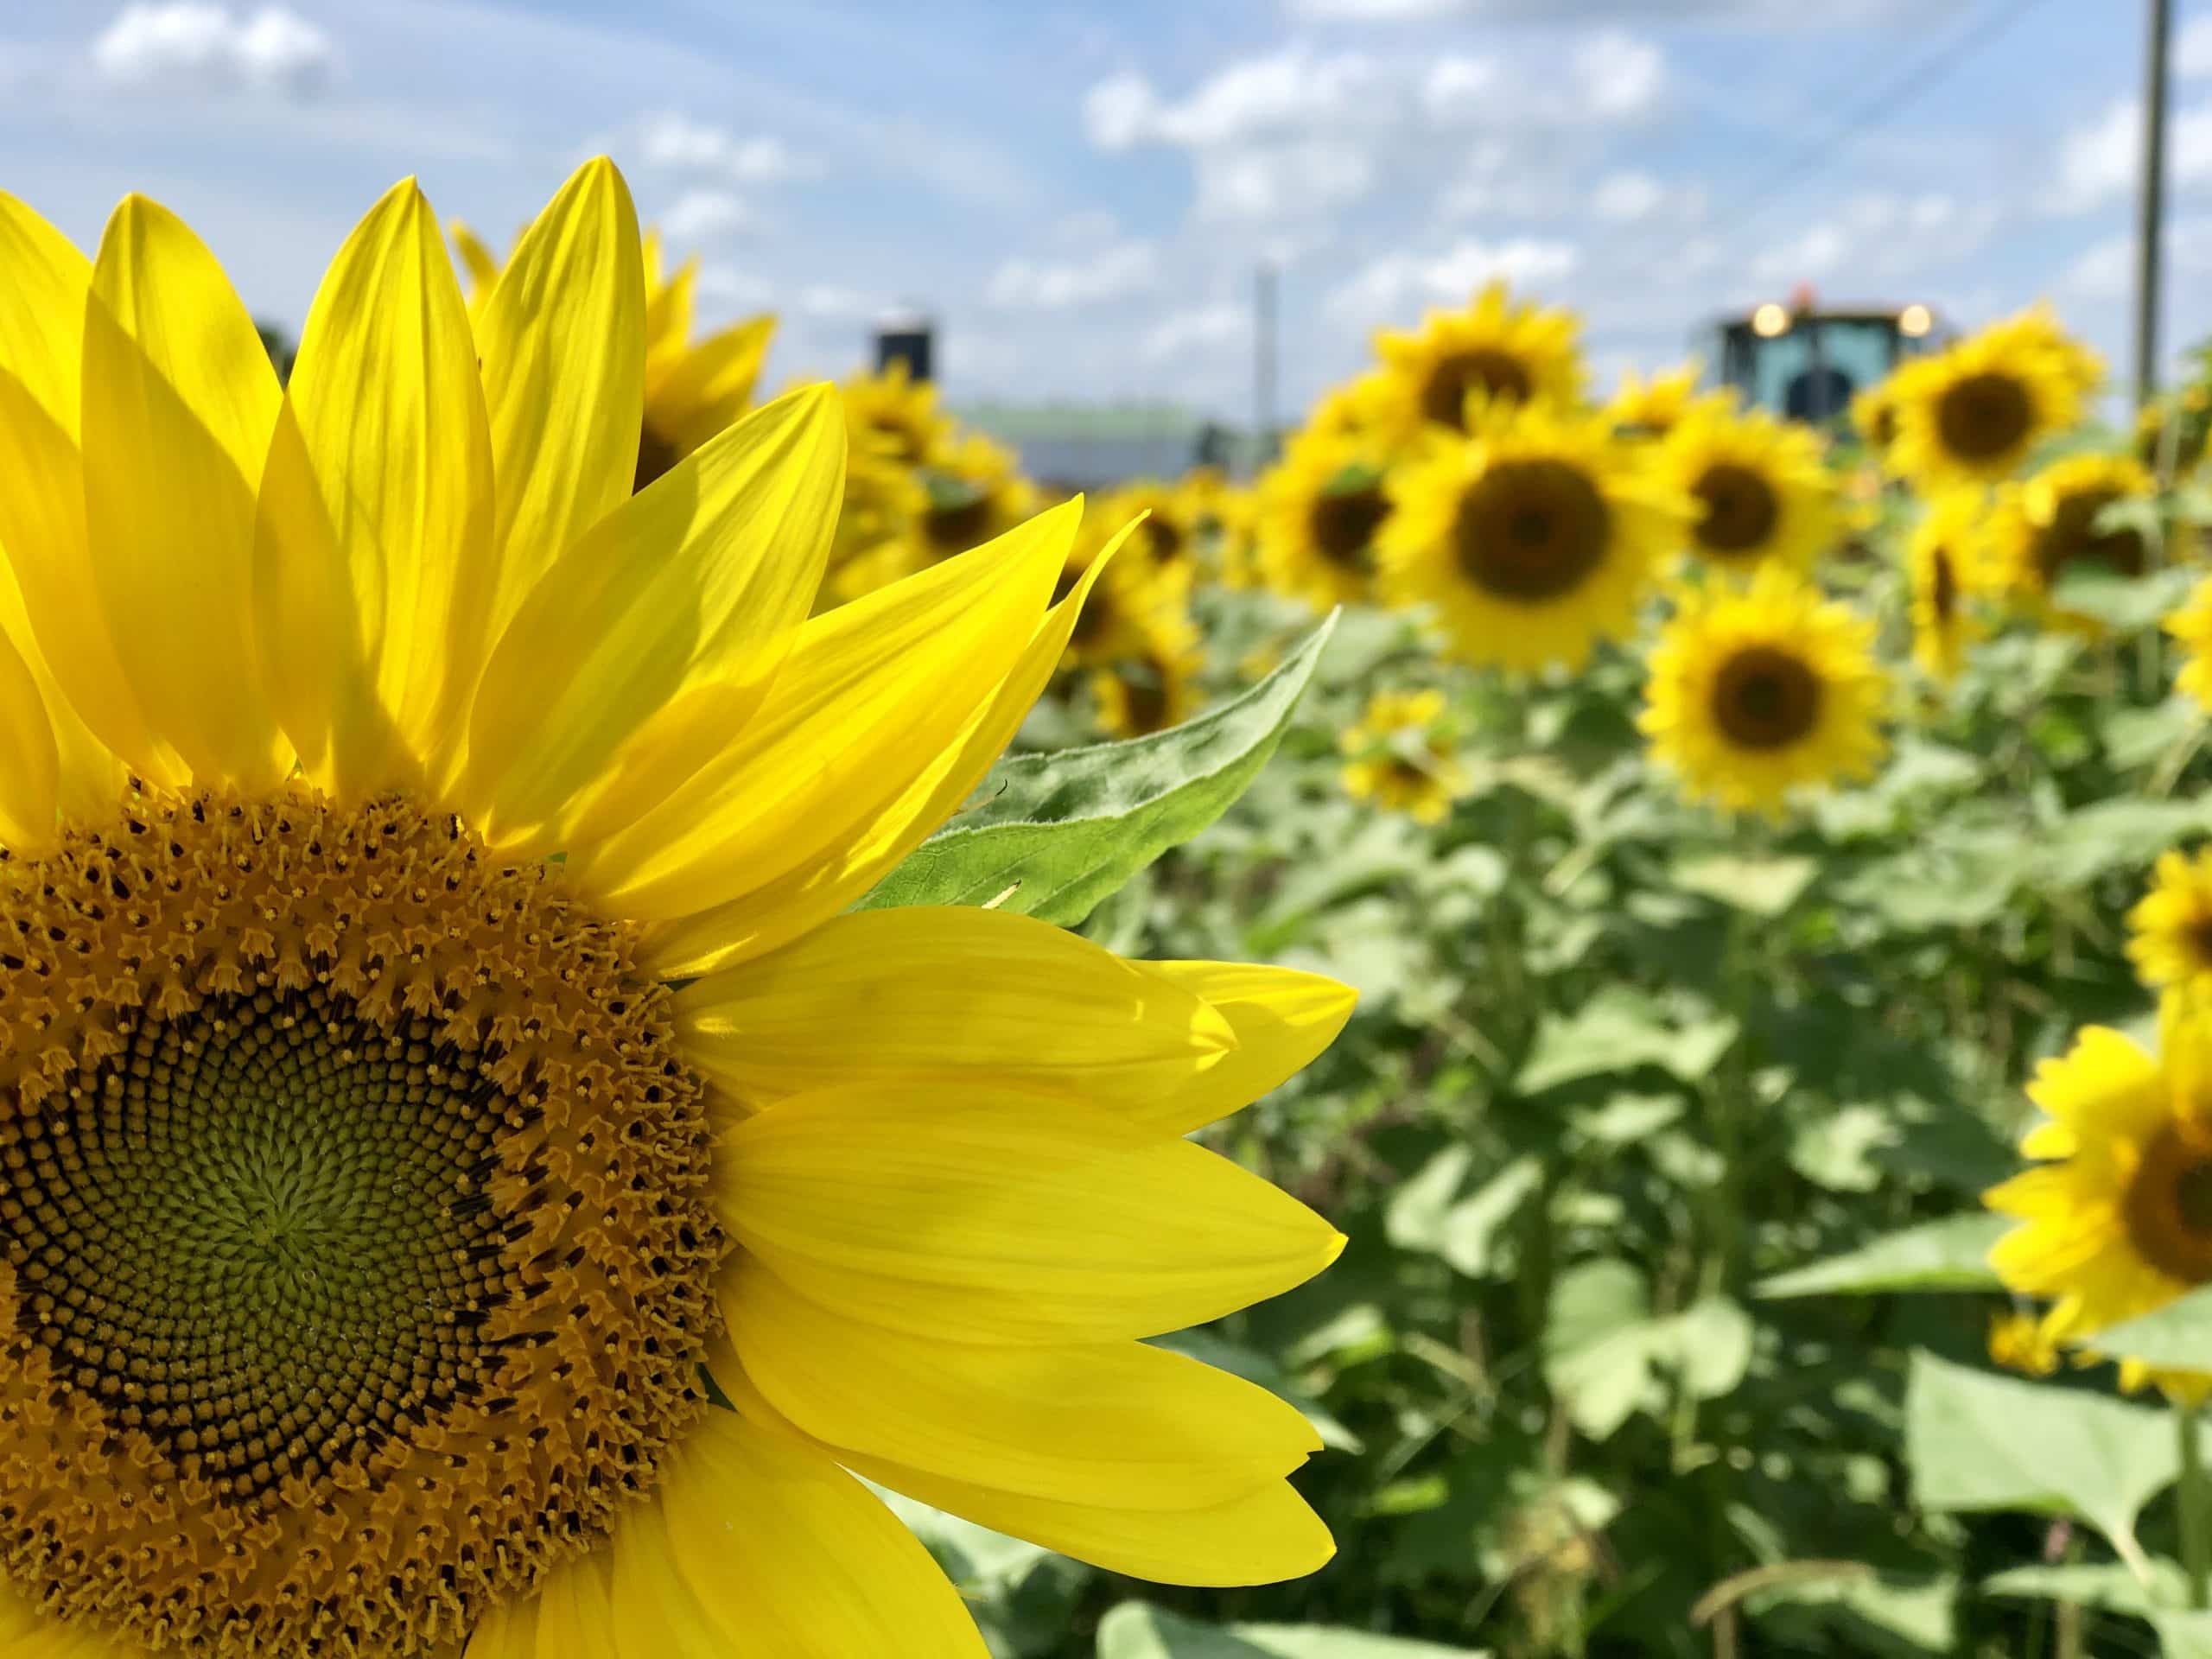 Sunflowers at Nickajack Farms